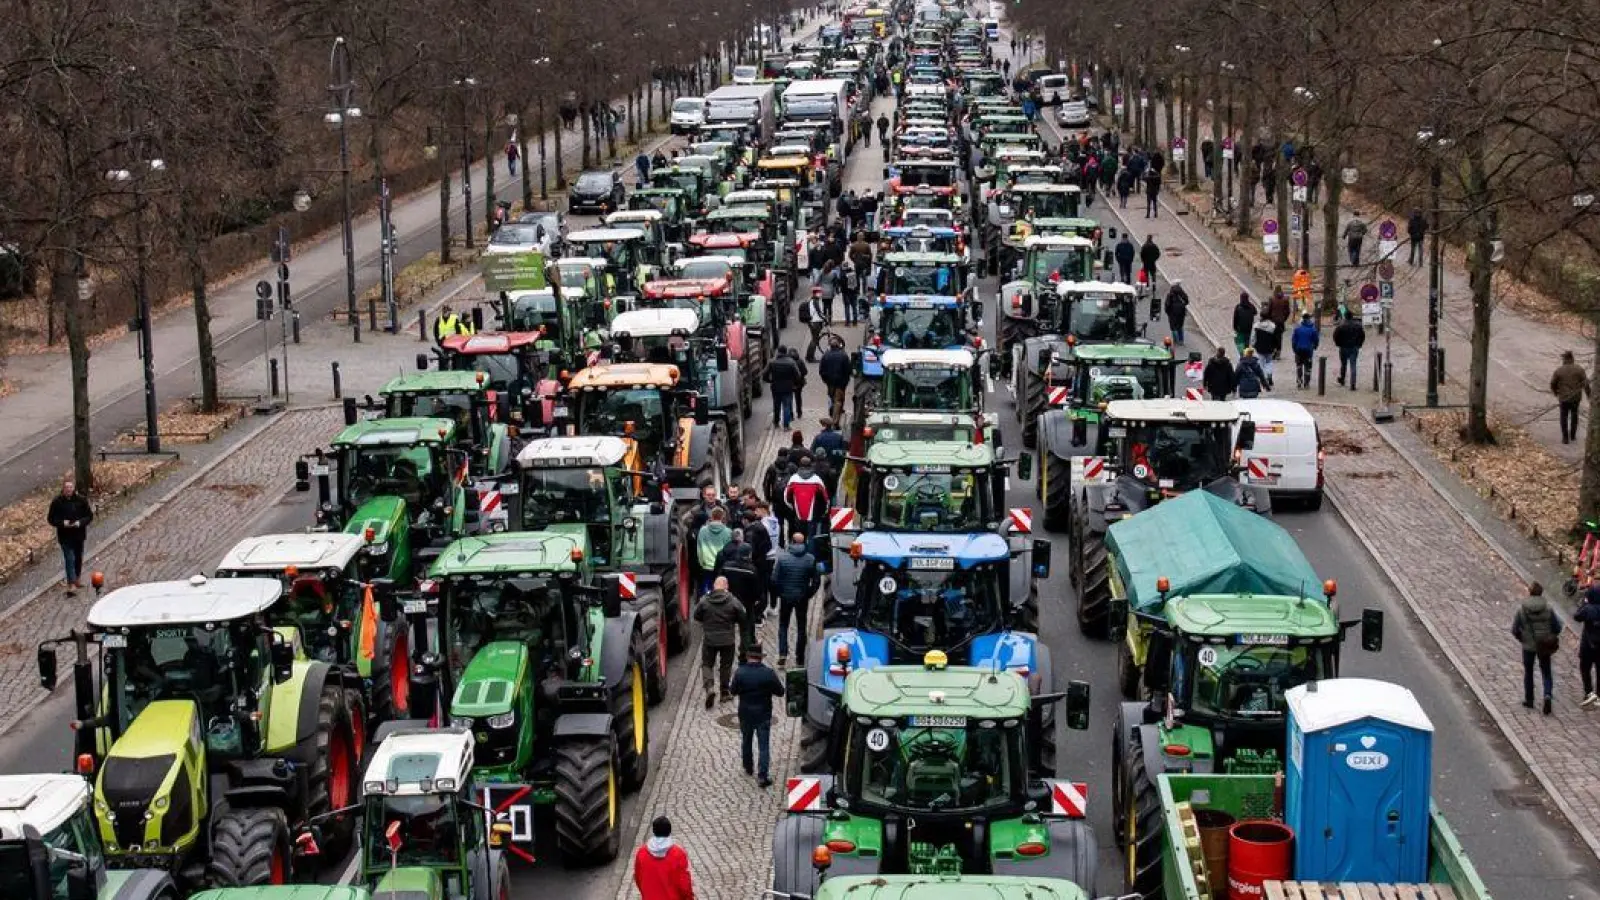 Alles dicht? Der deutsche Bauernverband ruft ab 8. Januar zu einer landesweiten Aktionswoche auf - unter anderem drohen Straßenblockaden. (Foto: Fabian Sommer/dpa/dpa-tmn)